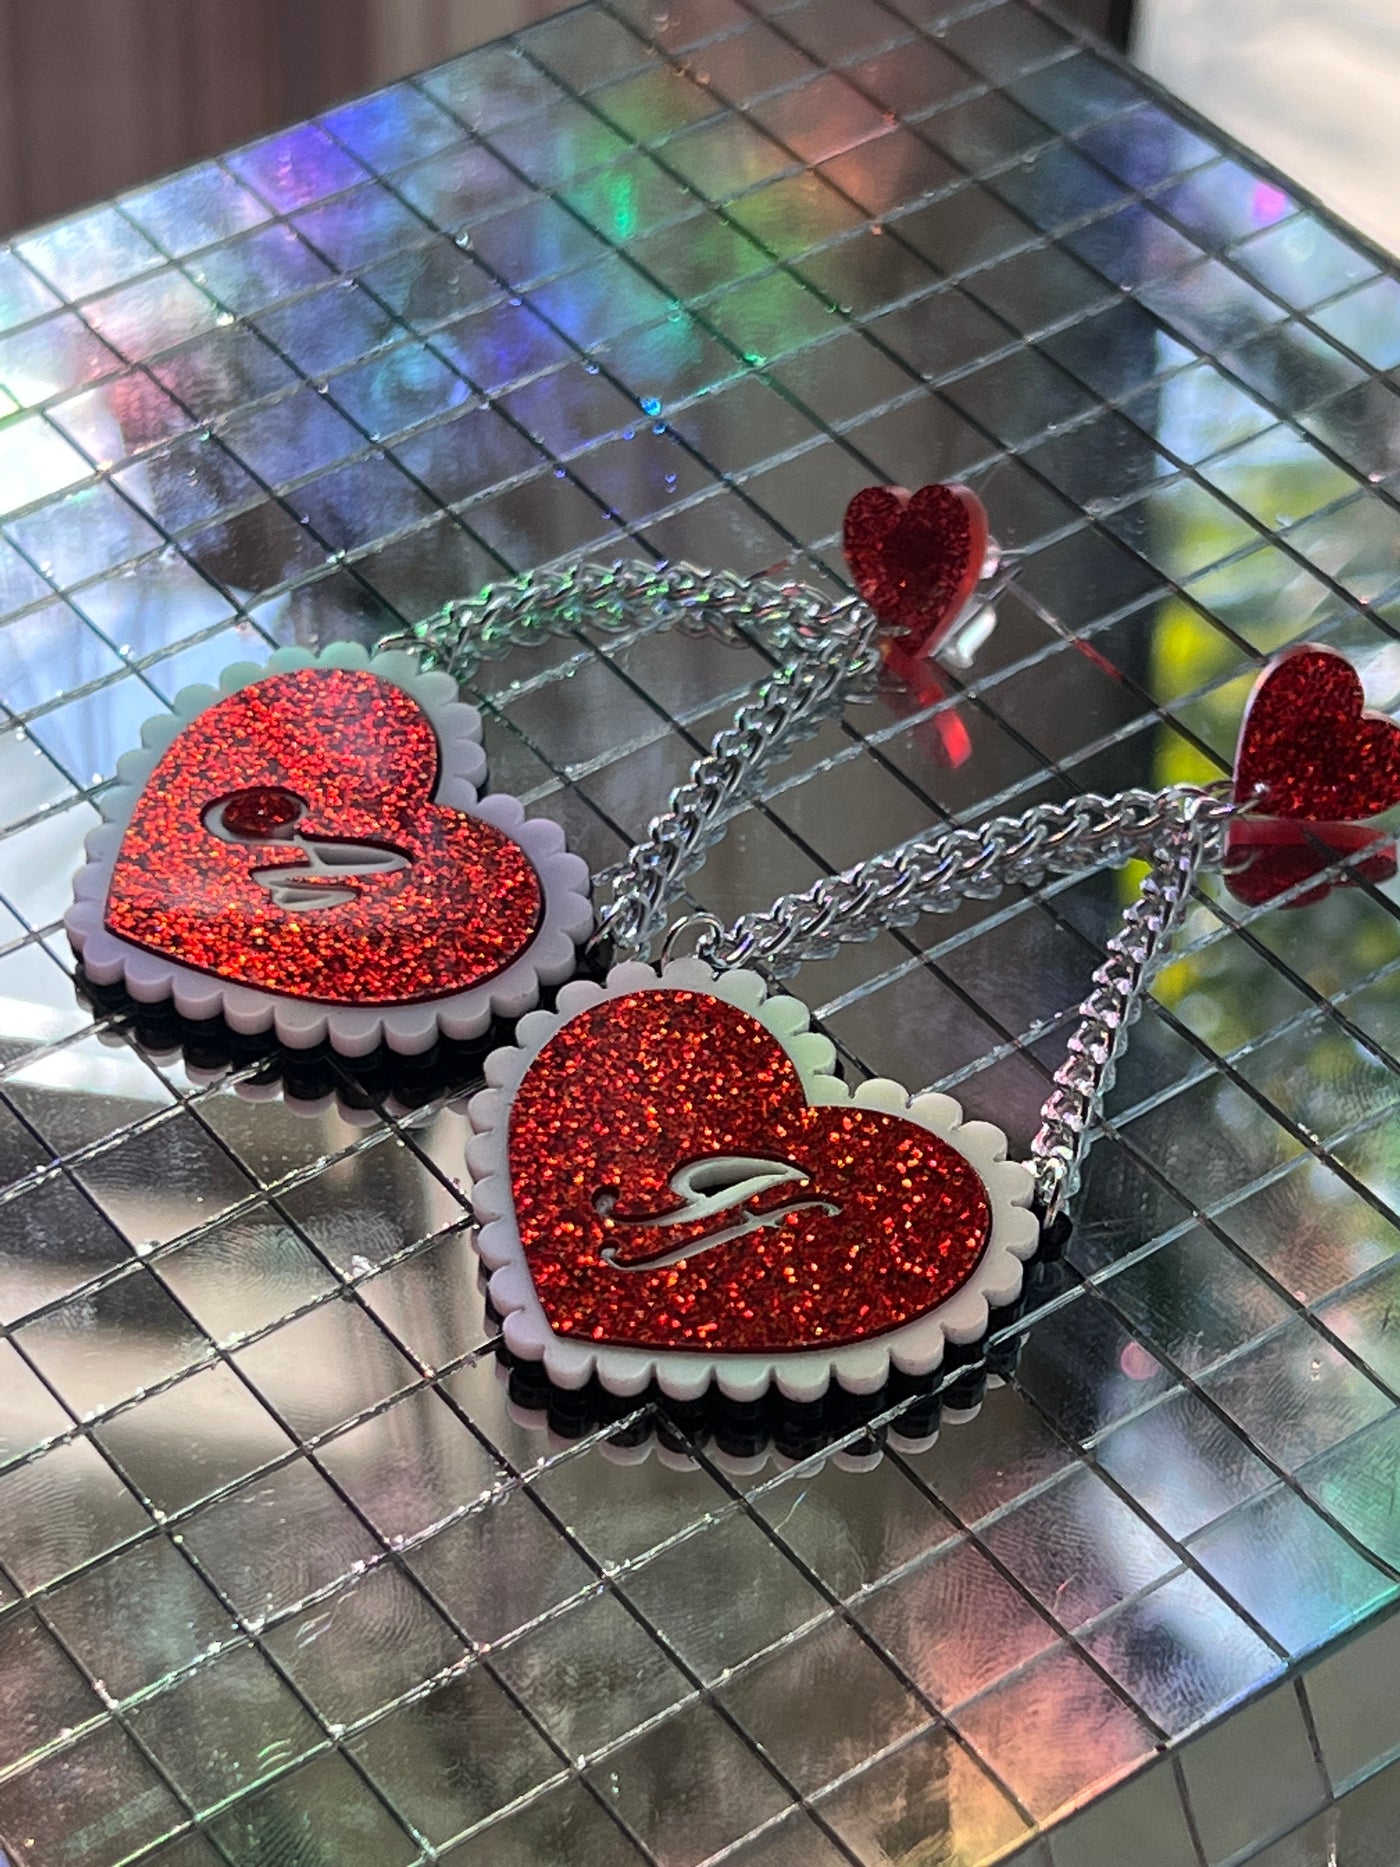 As If Valentine Heart Earrings